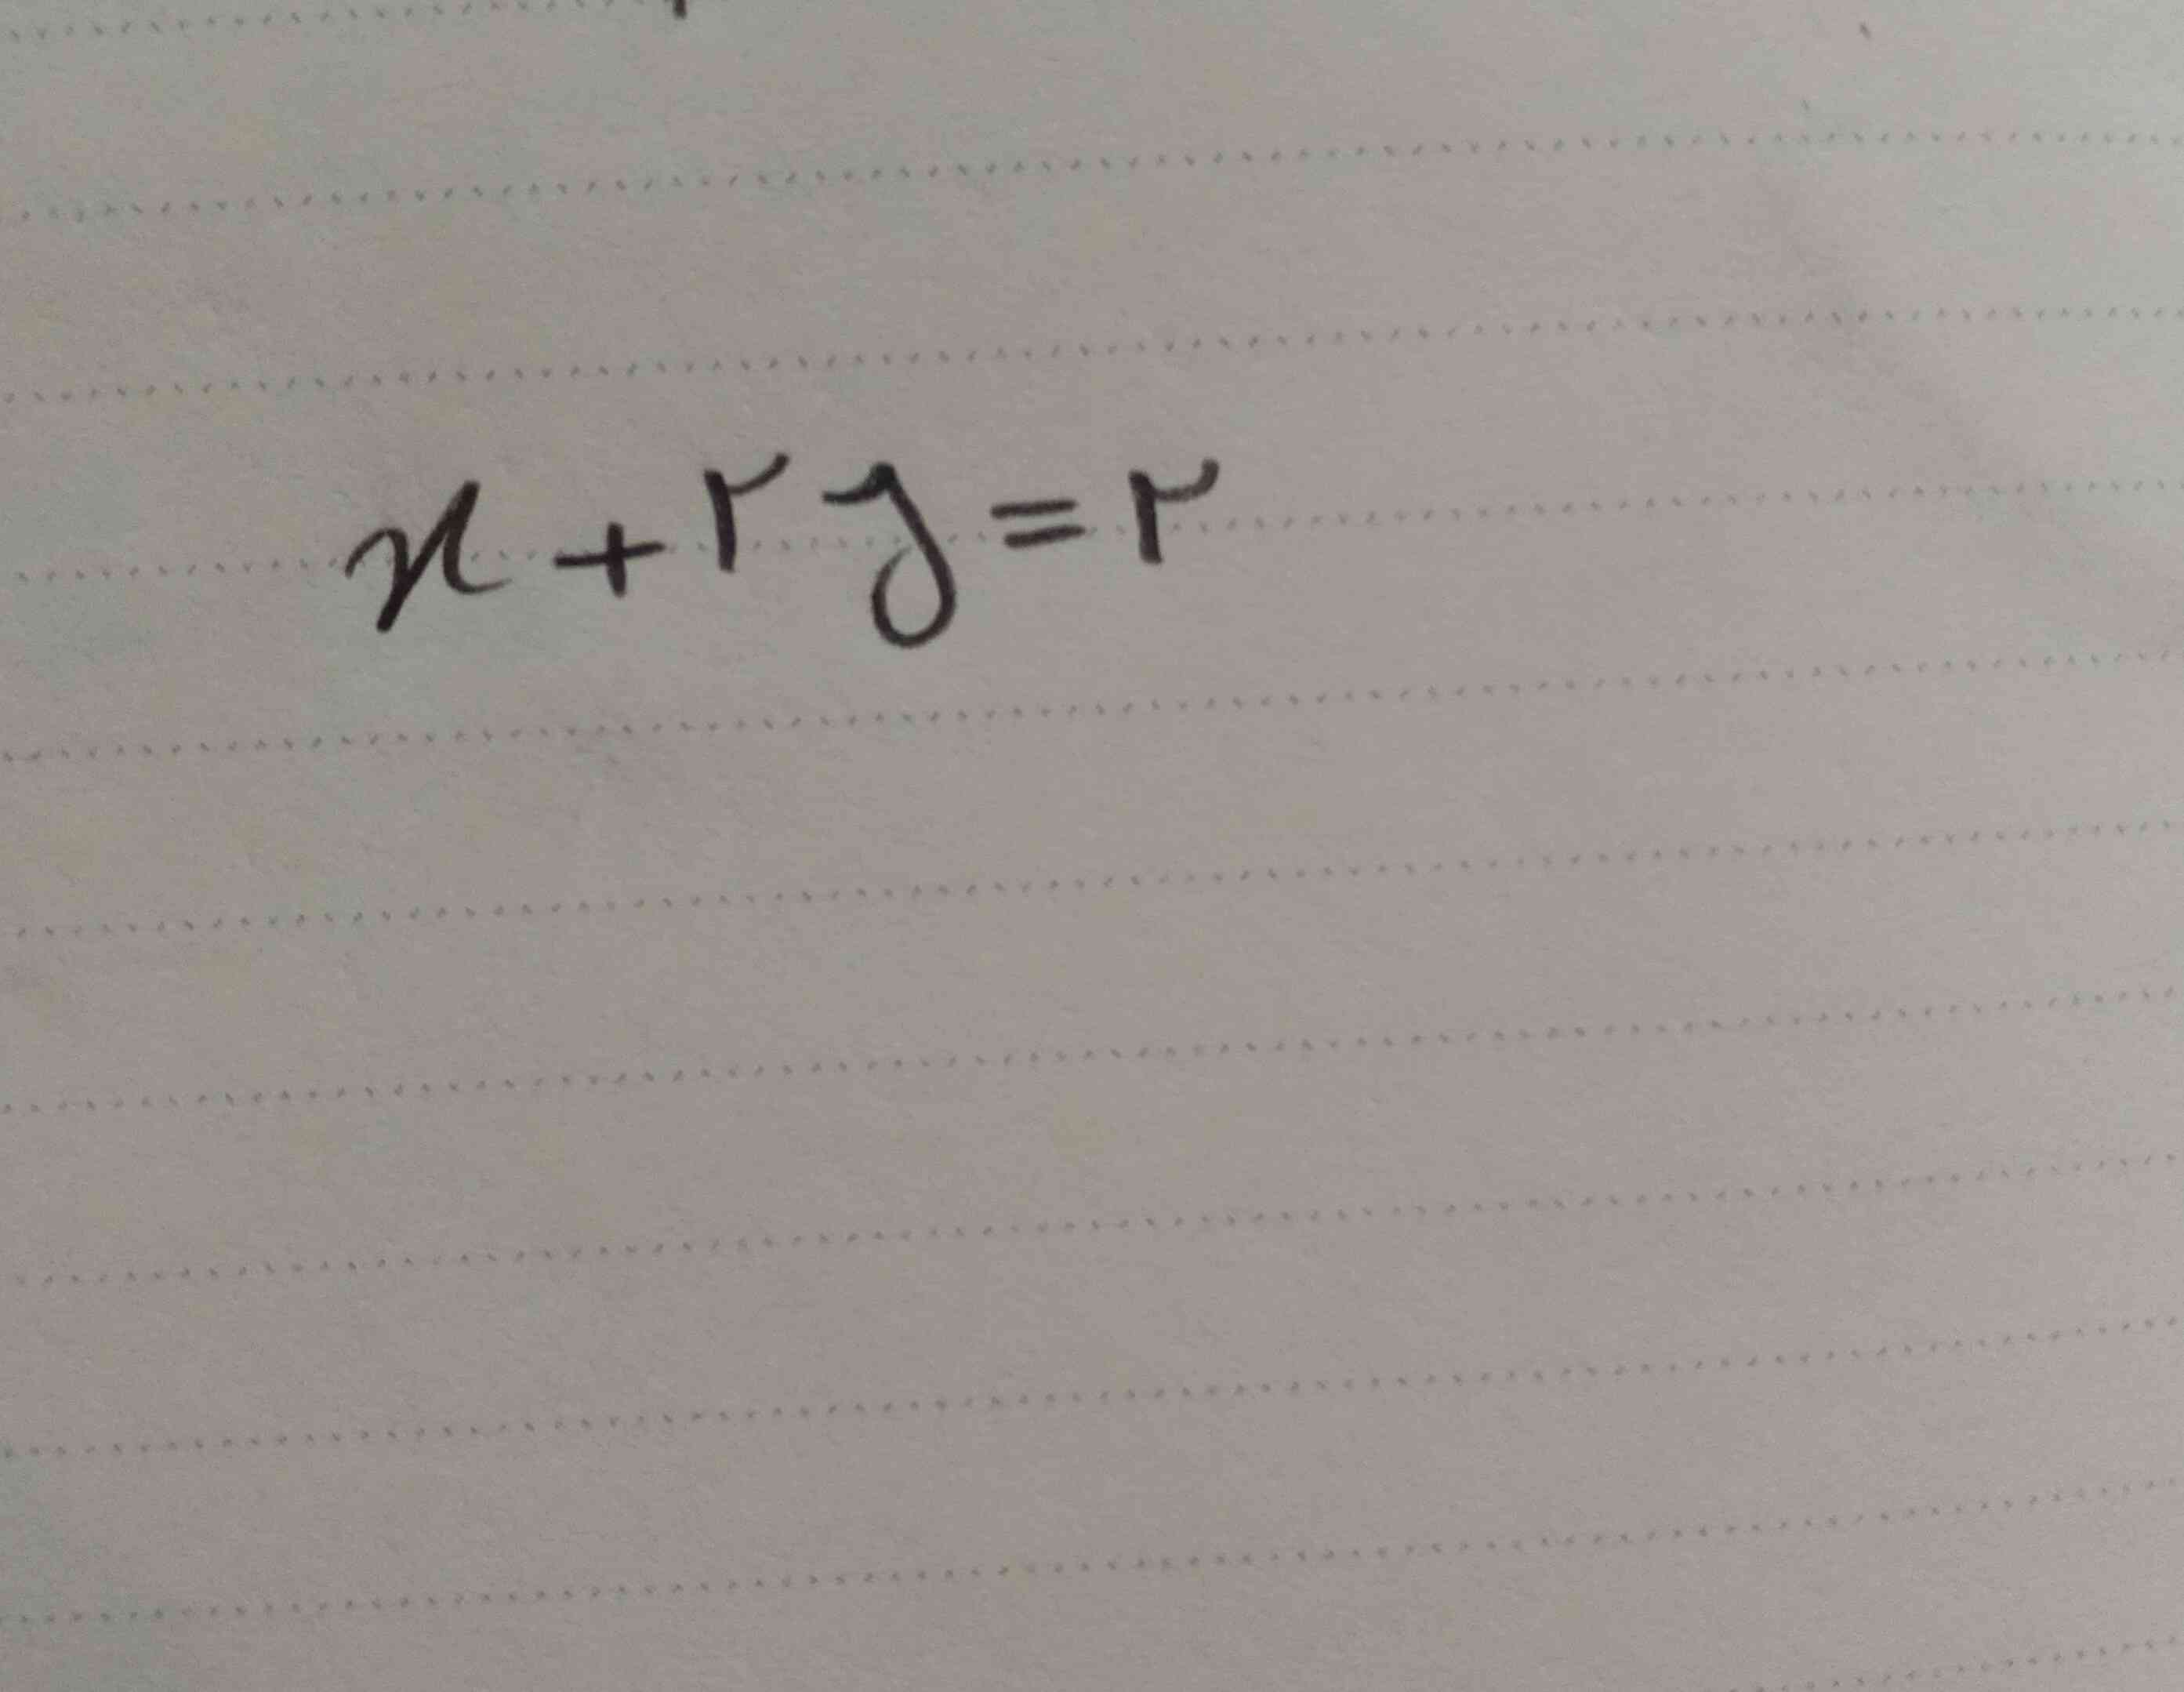 میشه توضیح بدین که چطوری میشه خط رسم کرد با این معادله 